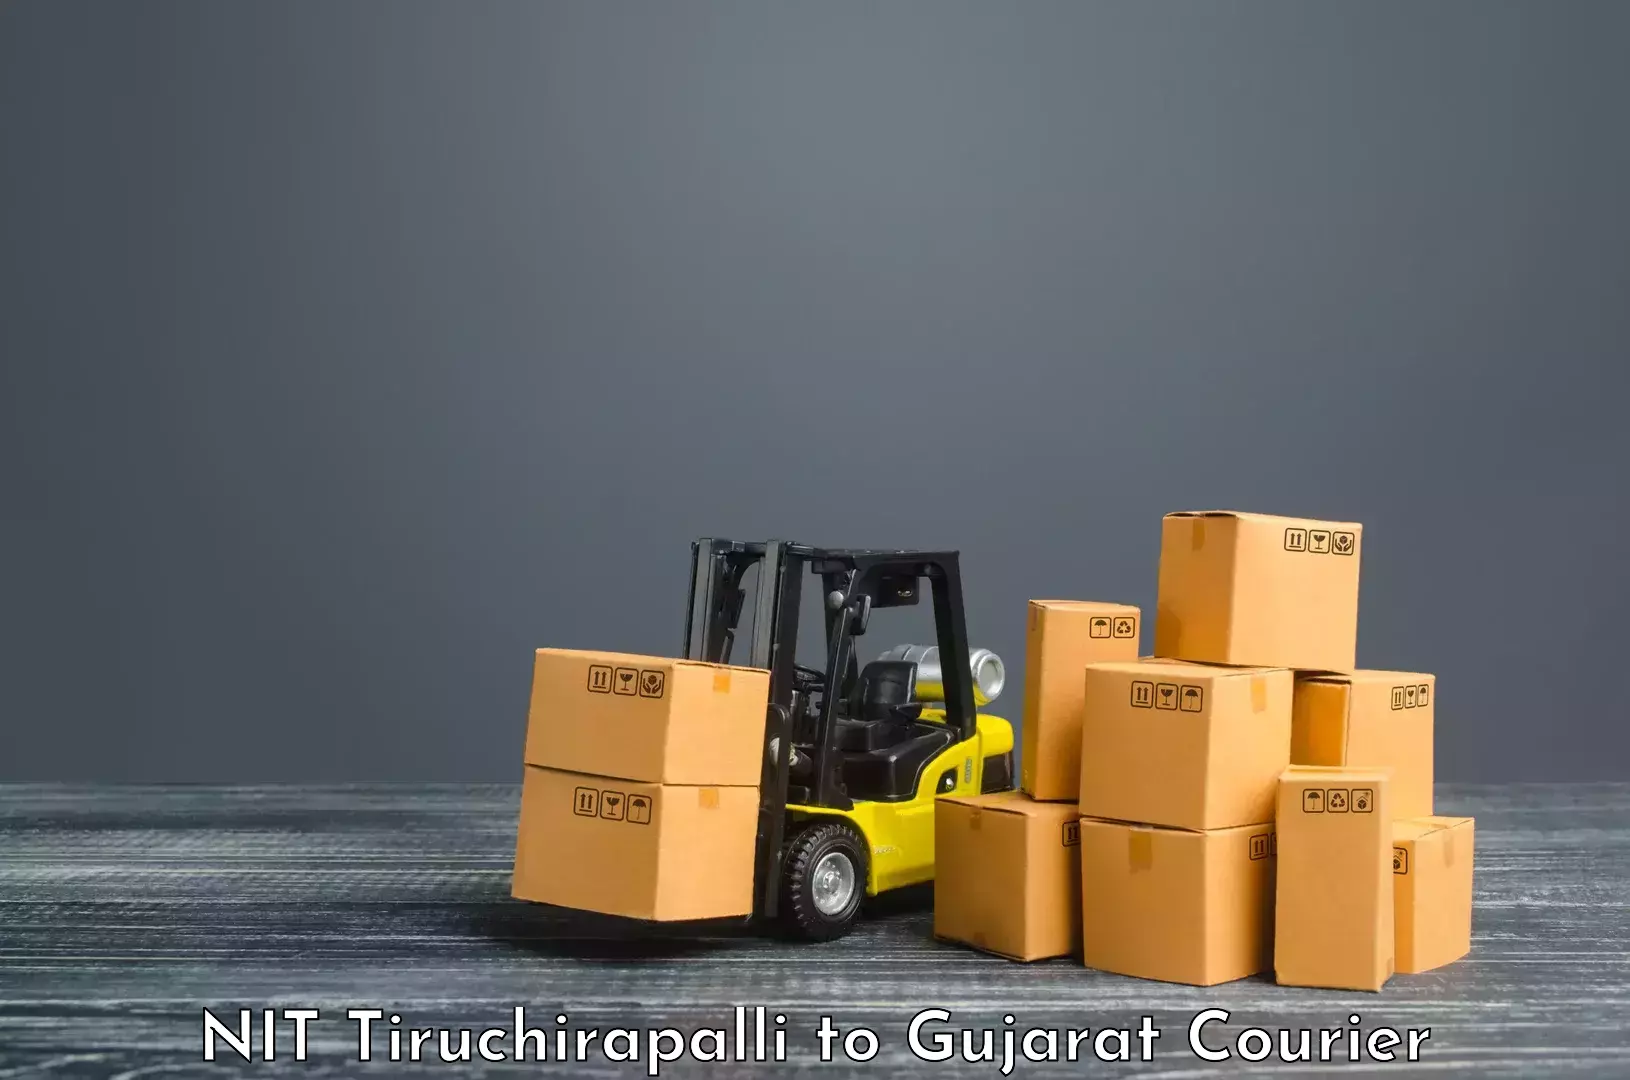 Large package courier NIT Tiruchirapalli to IIIT Vadodara